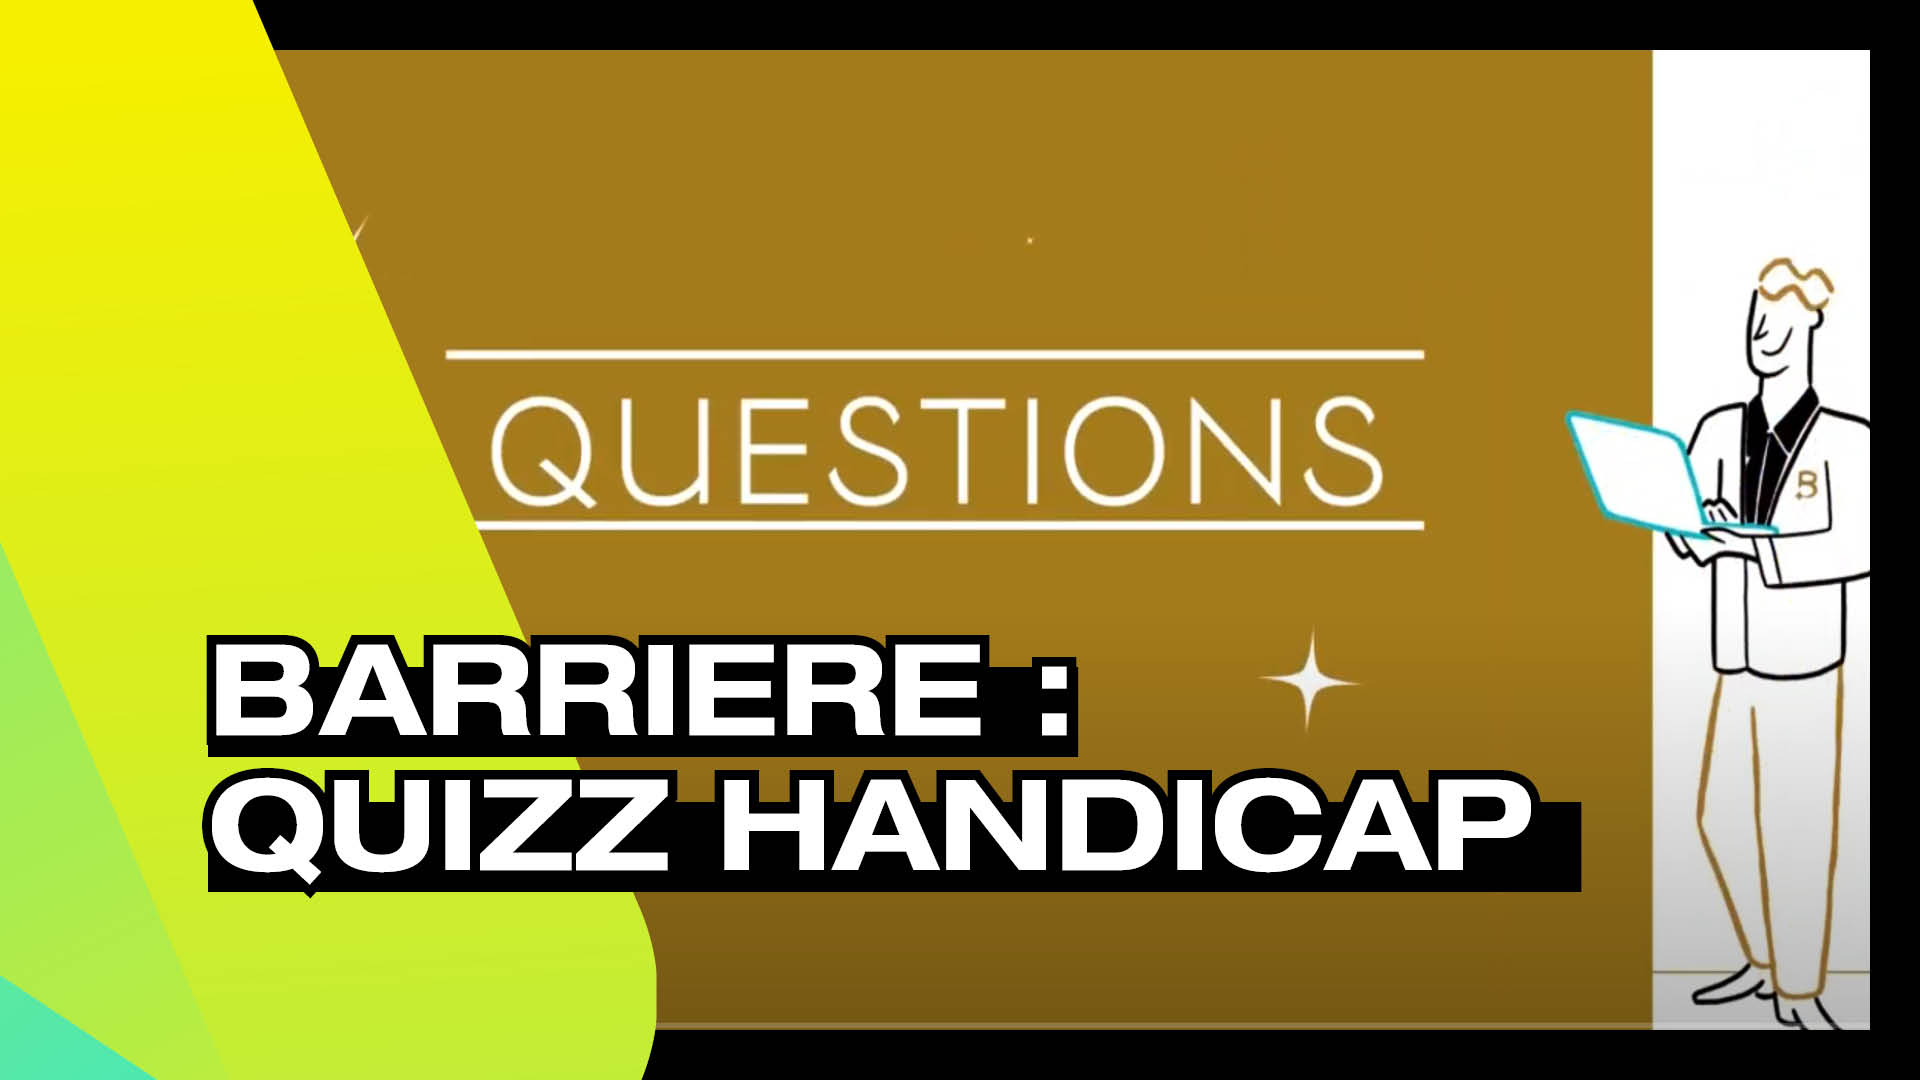 Barrière - Quizz Handicap